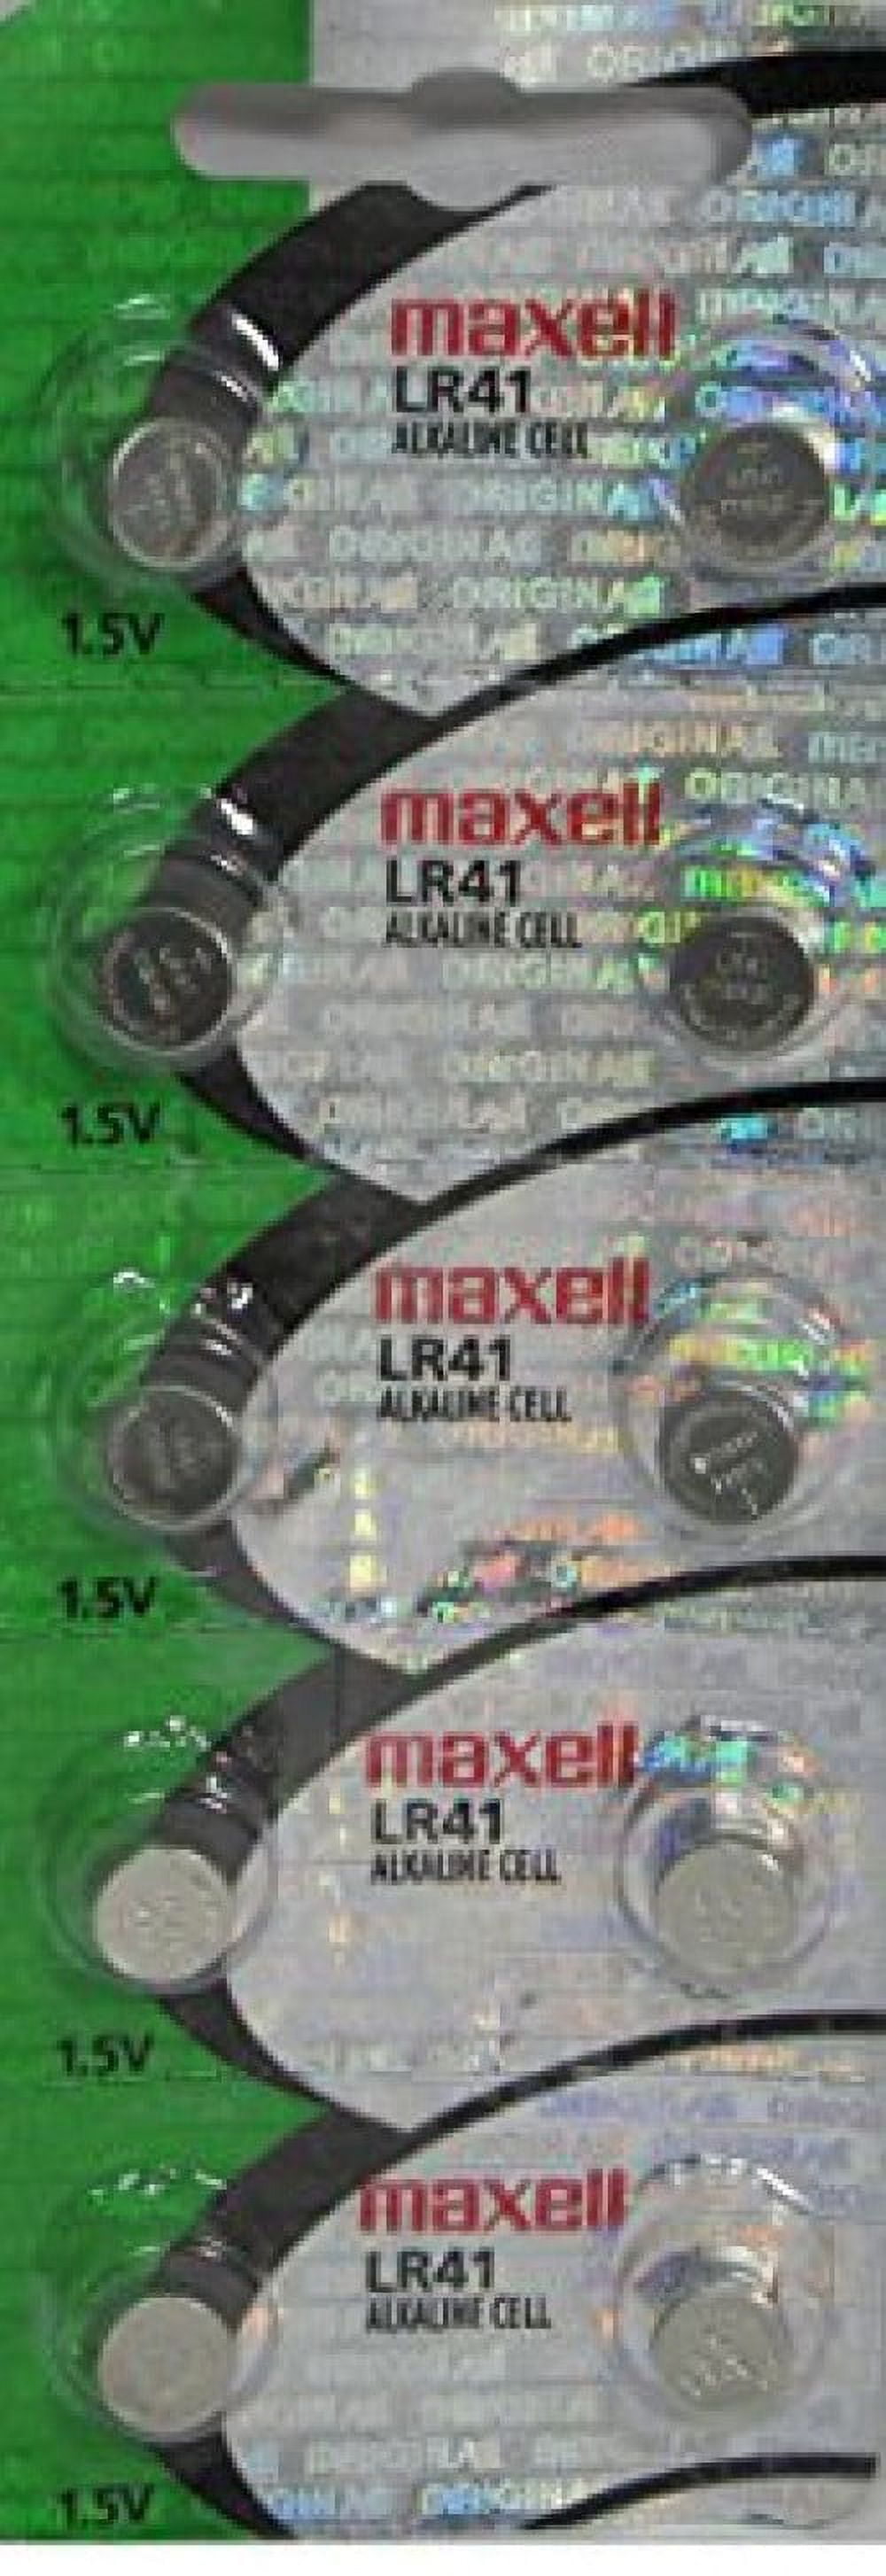 Bateria LR41 1,5V Alcalina c/1 Unidade FOXLUX